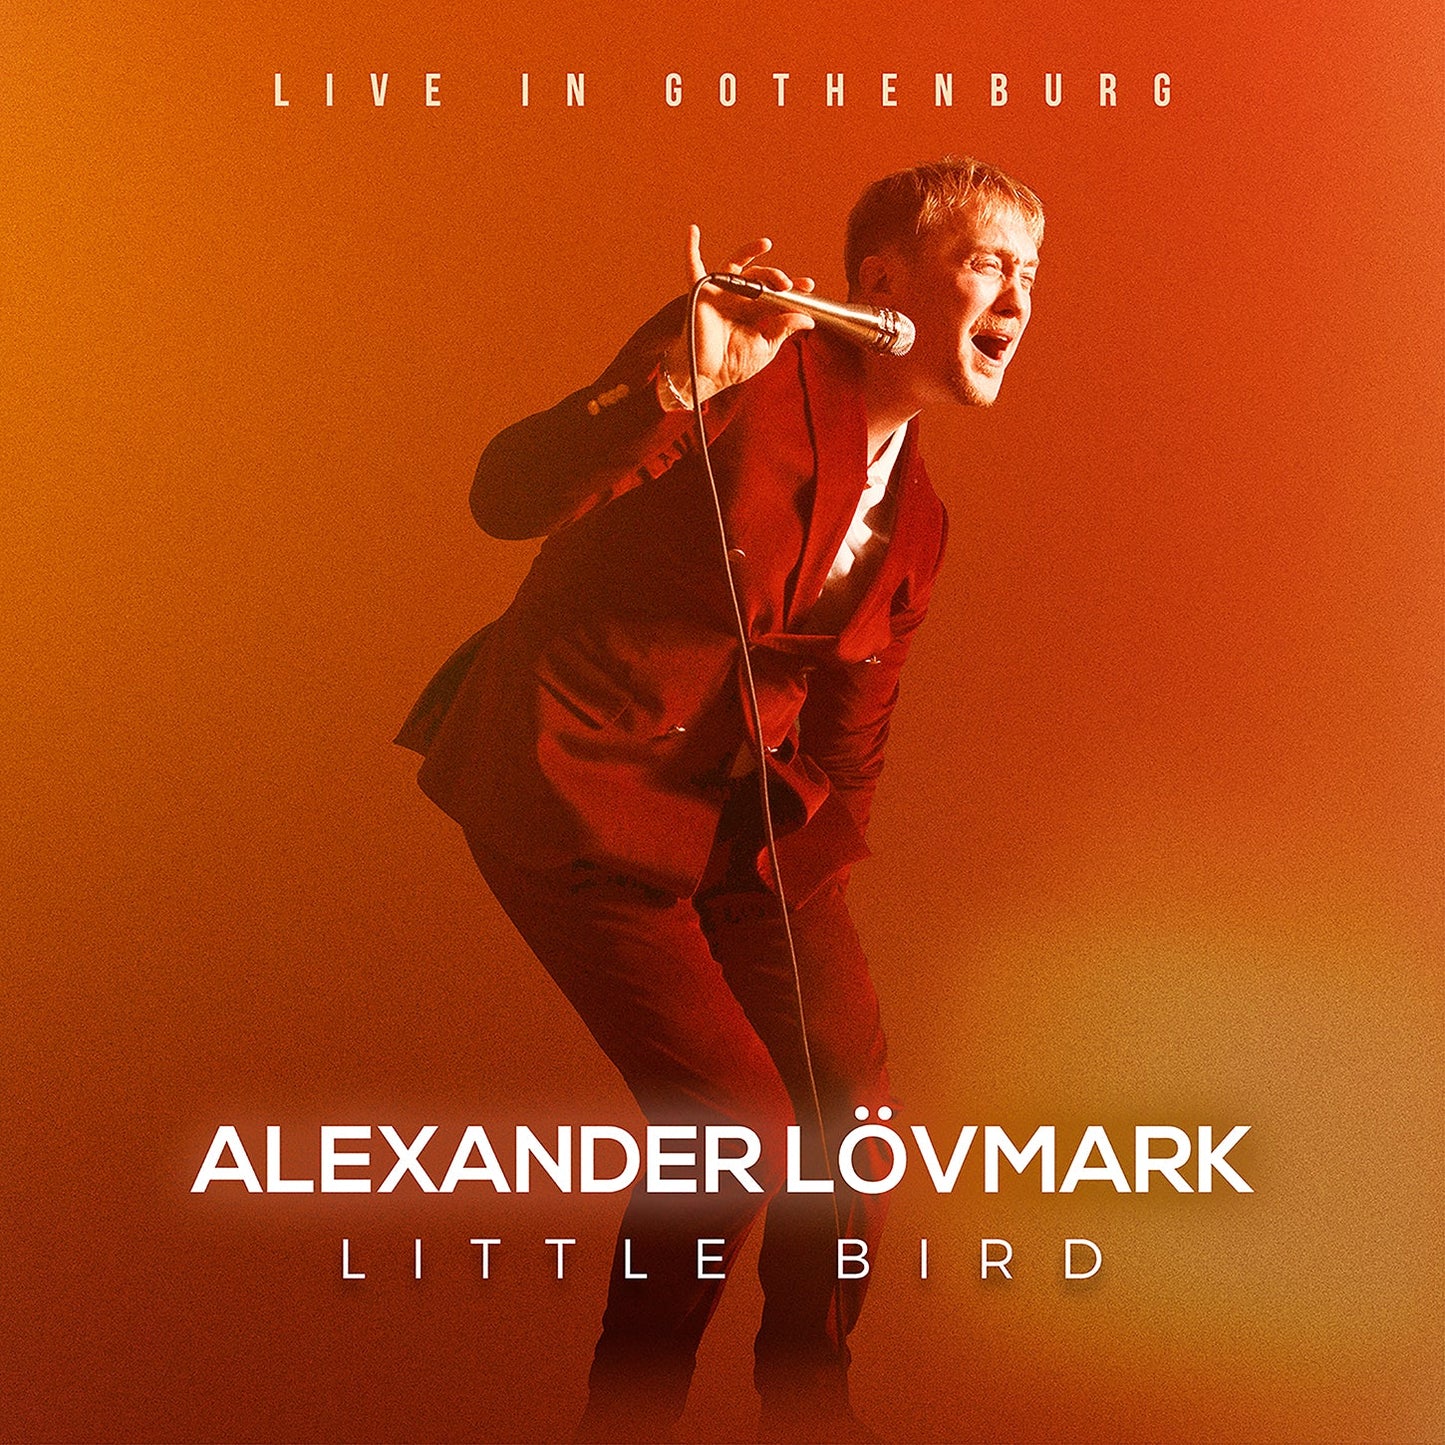 Little Bird – Live In Gothenburg